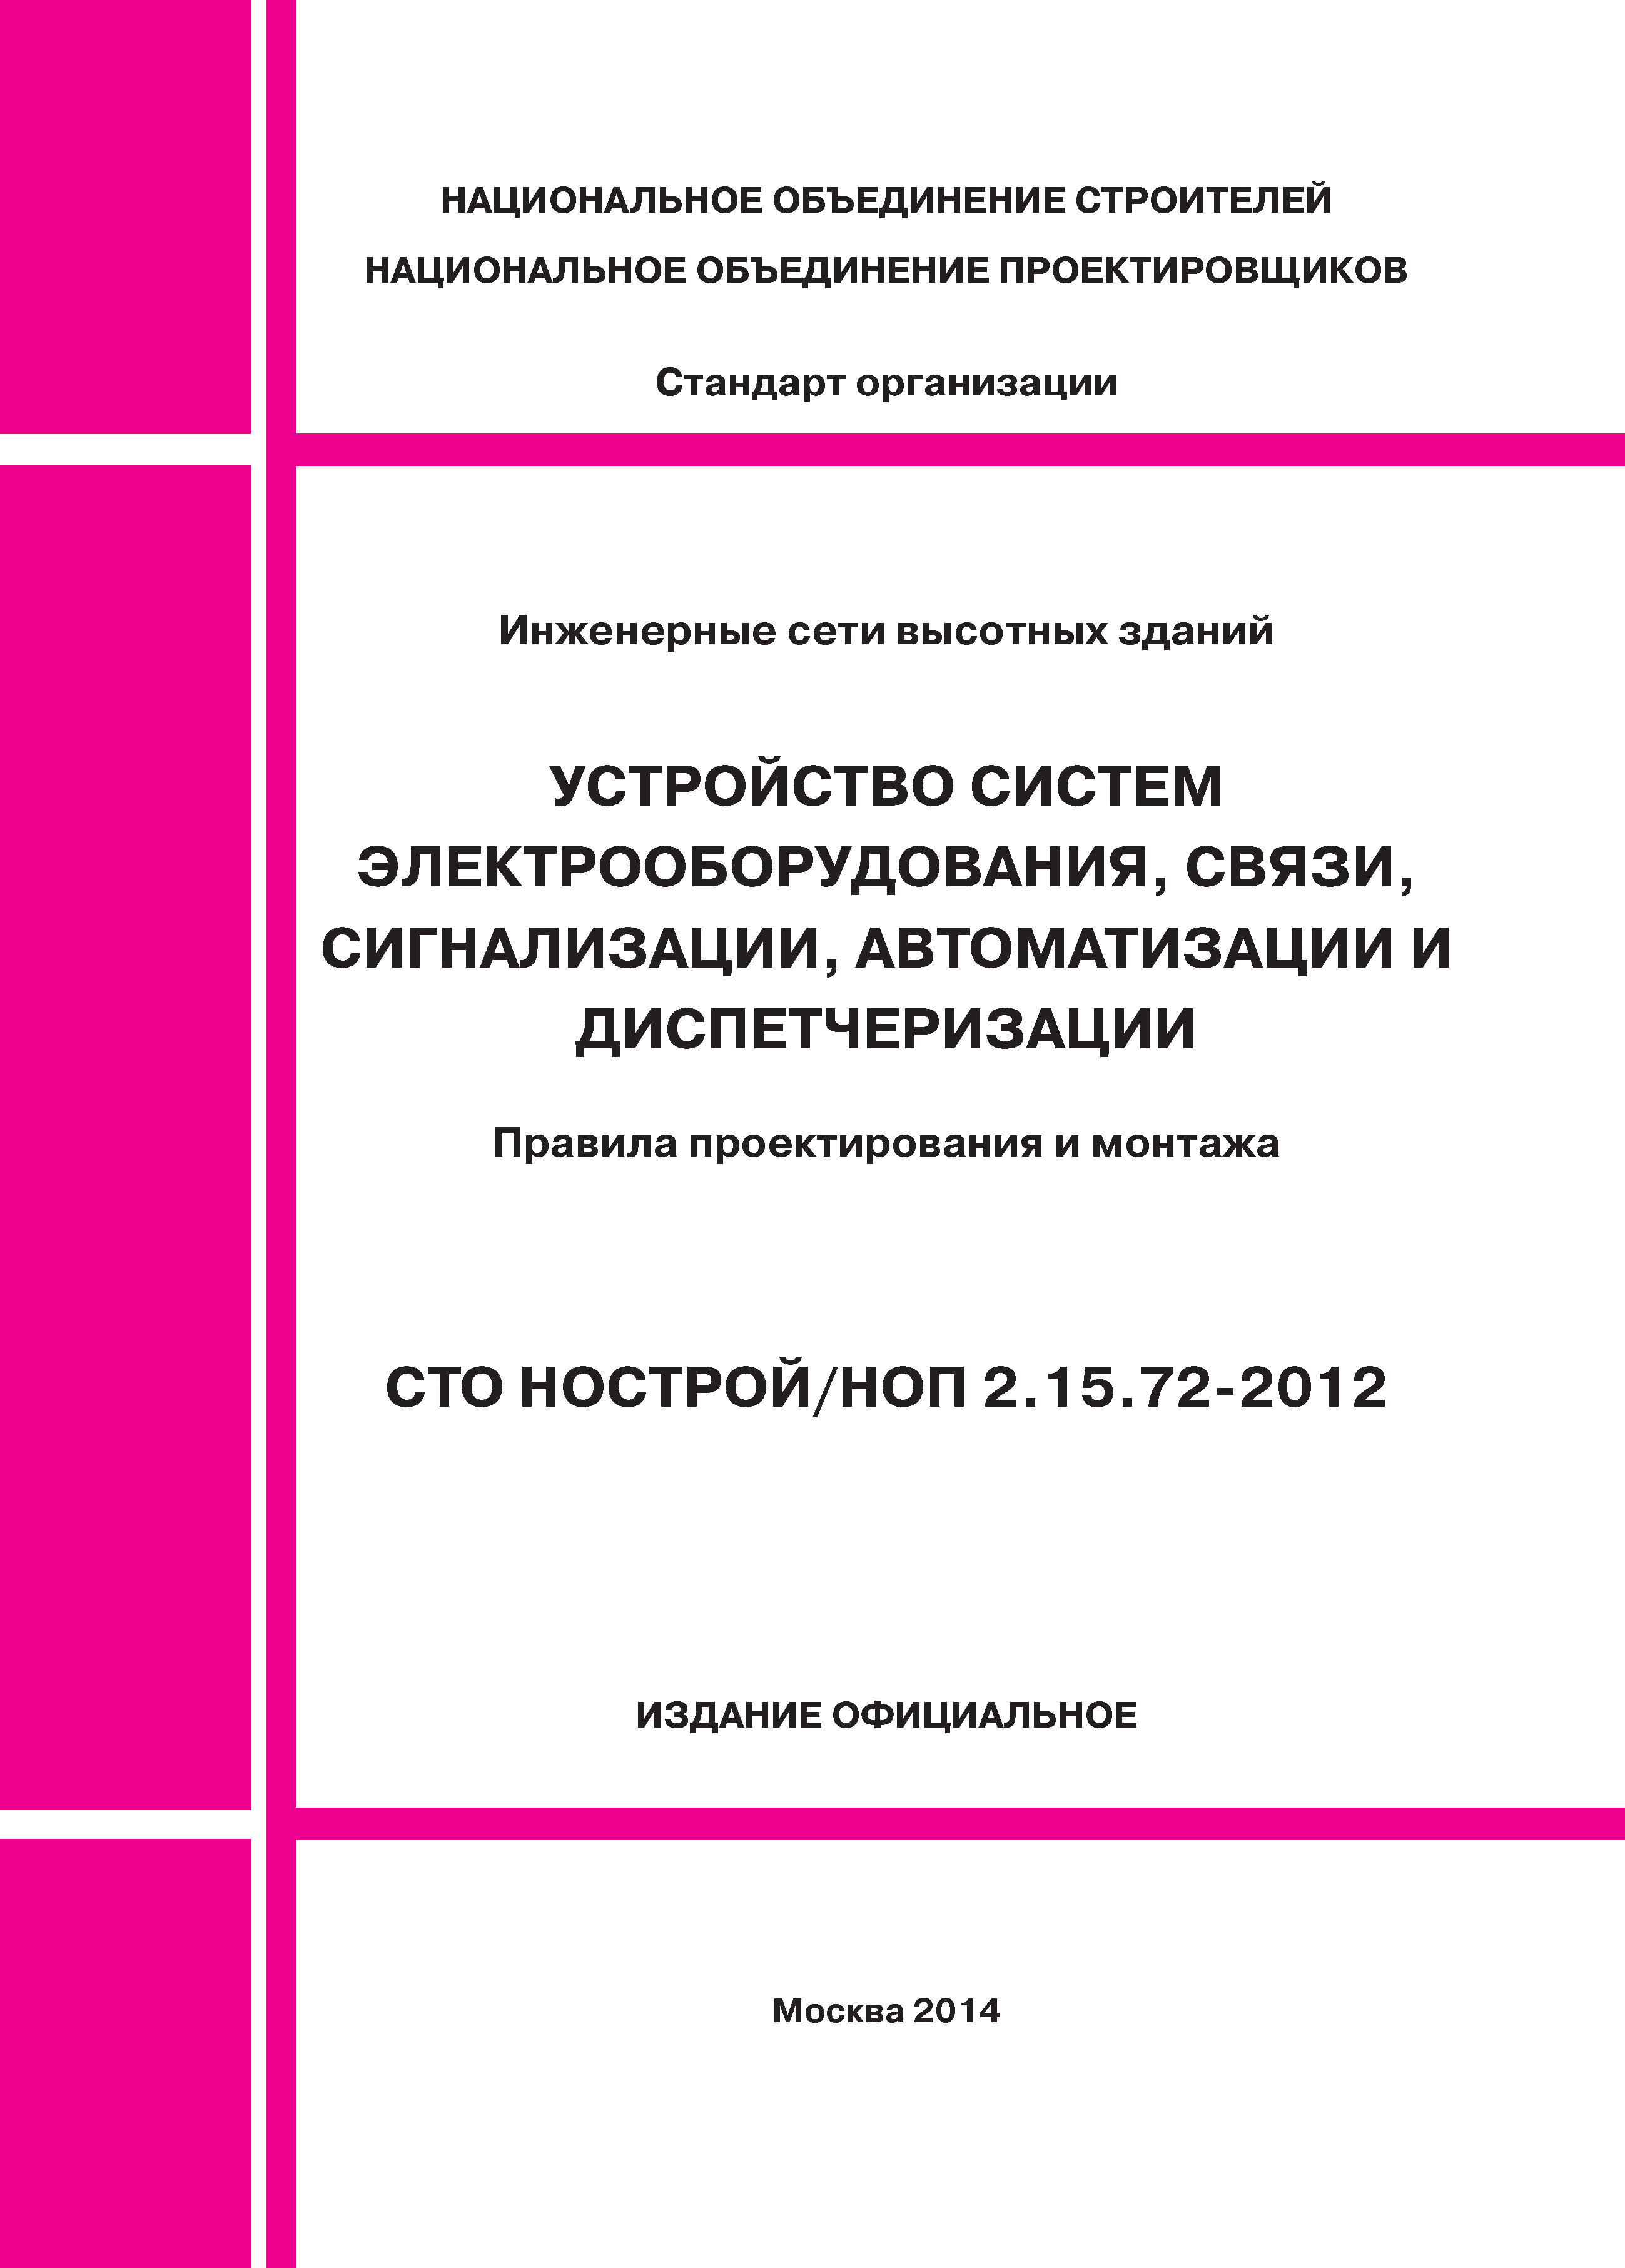 СТО НОСТРОЙ/НОП 2.15.72-2012